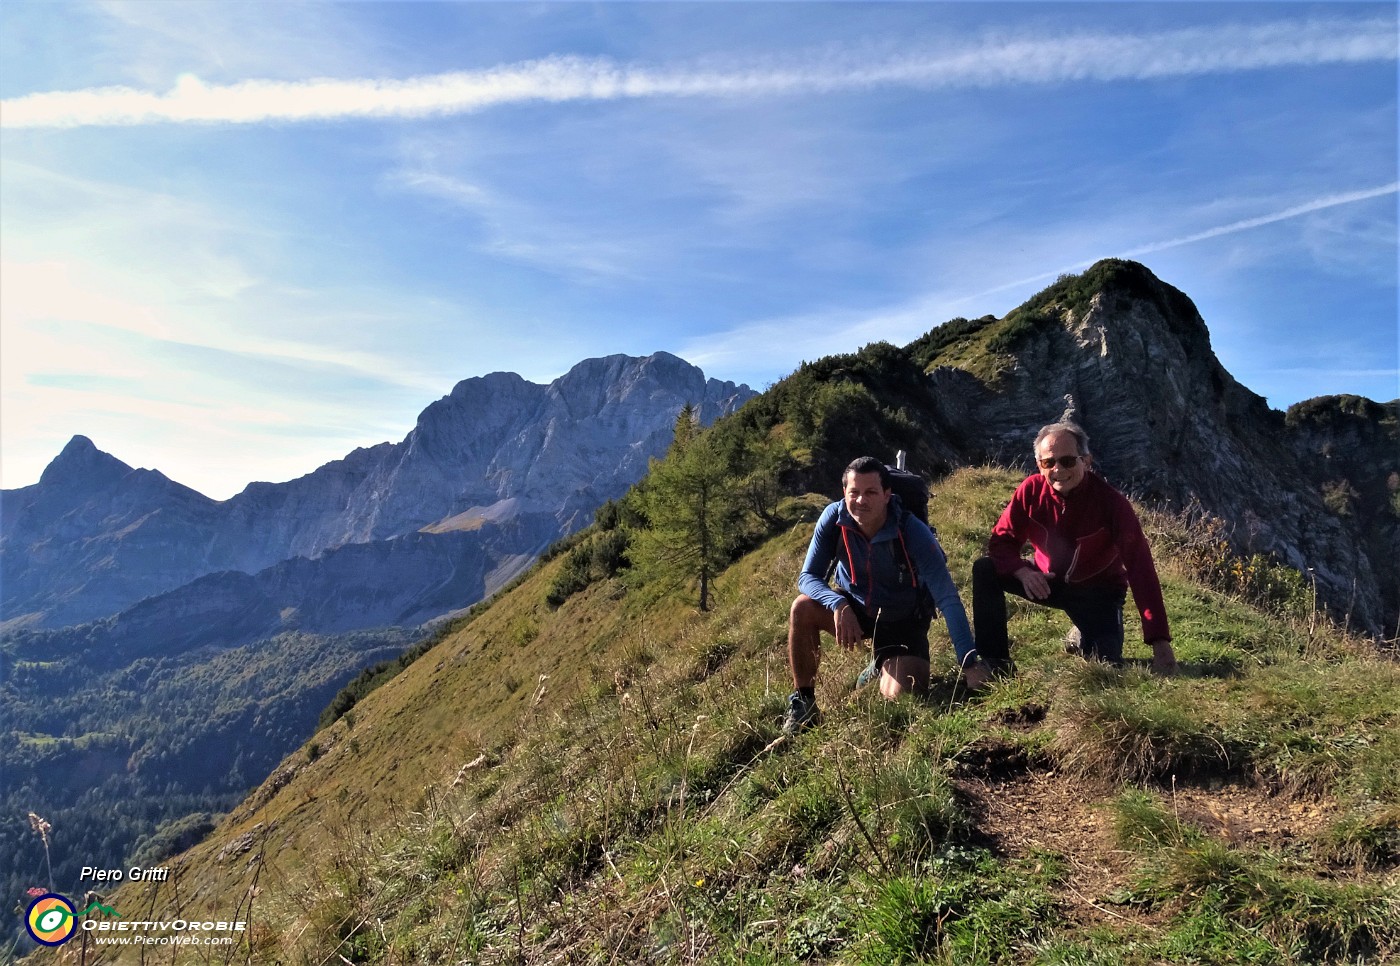 15 Al Passo della Marogella (1869 m) con vista verso (da dx) Corno Branchino, Arera, Cima di Valmora.JPG -                                